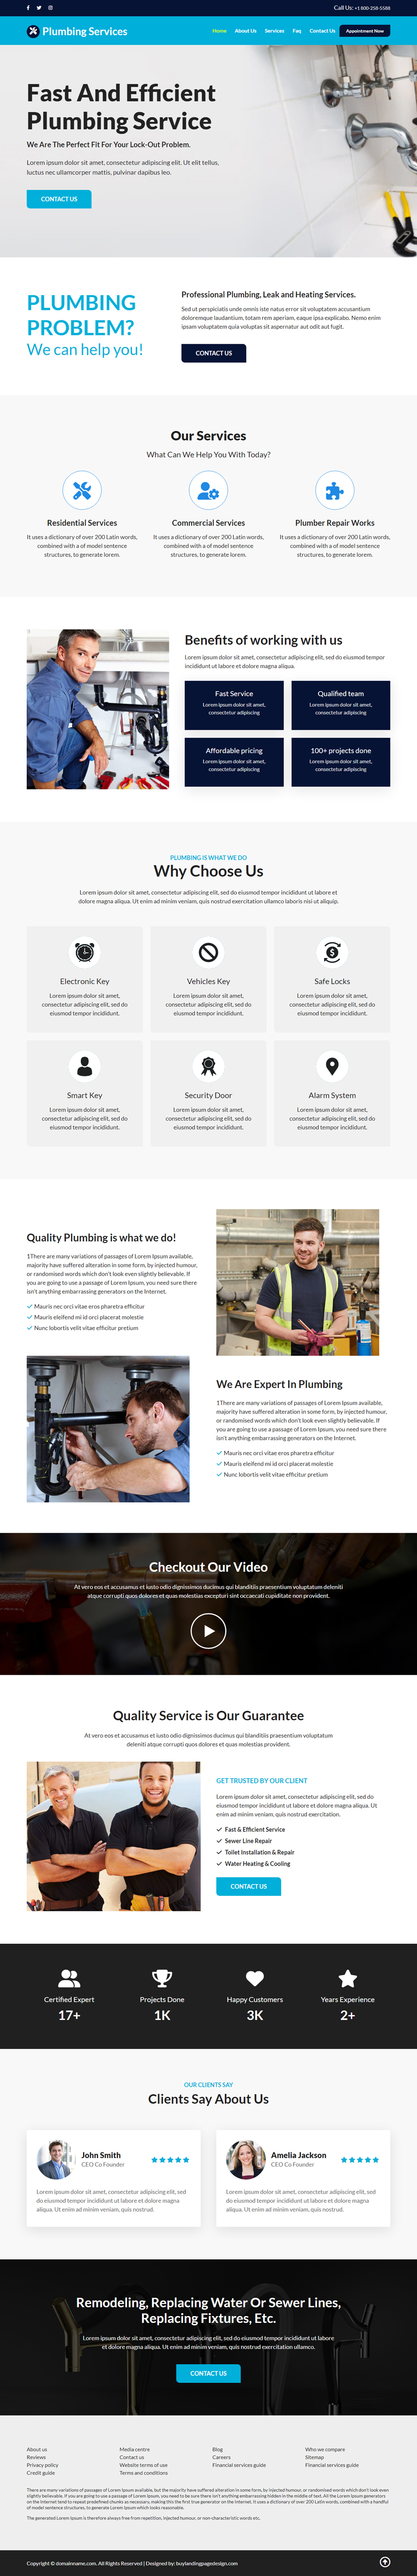 emergency plumbing services responsive website design